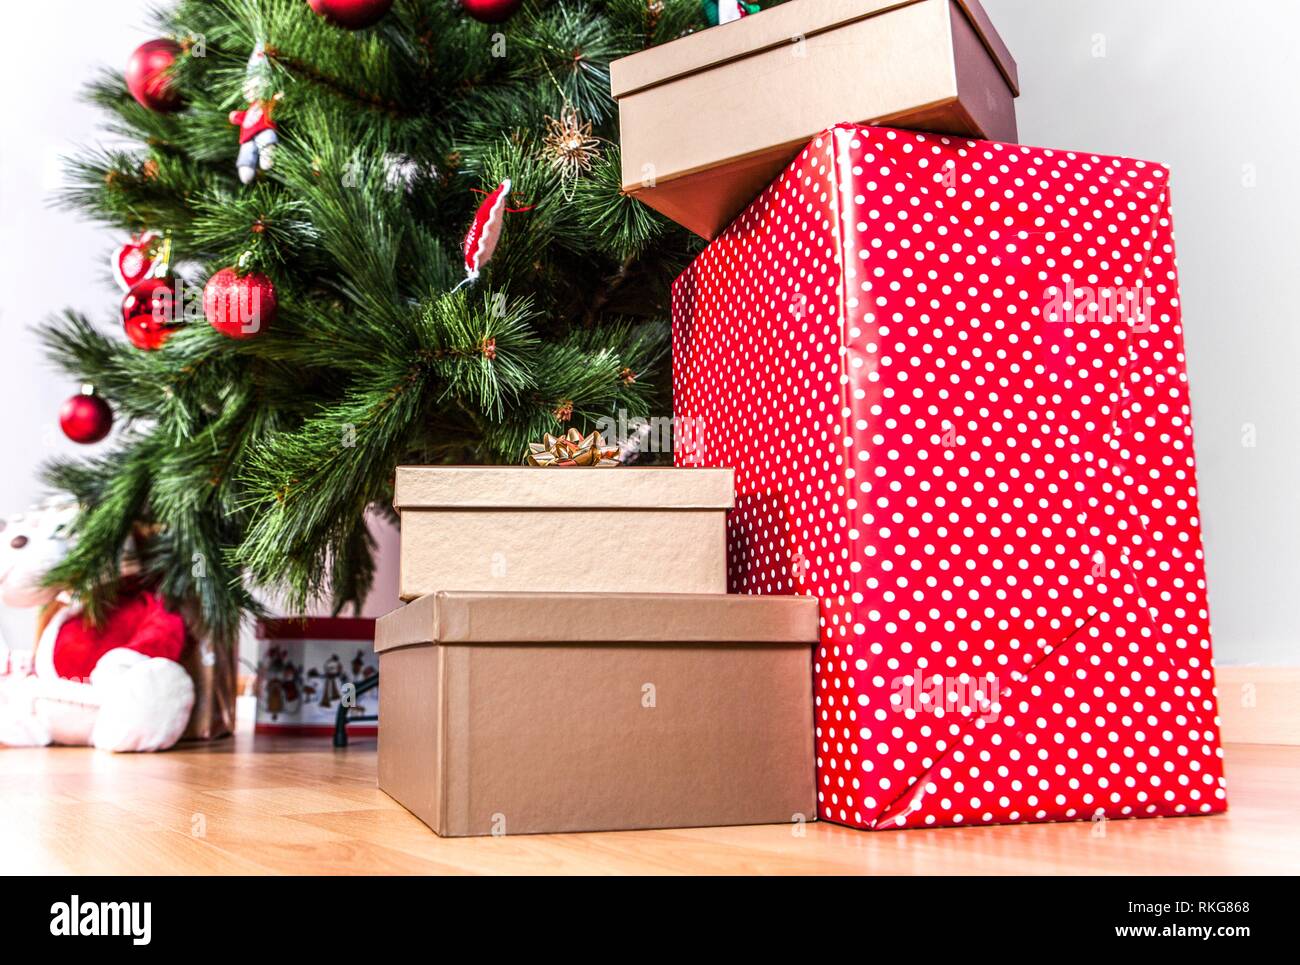 Geschenkboxen auf dem Boden auf einen Weihnachtsbaum Hintergrund. Gutes neues Jahr Geist. Stockfoto